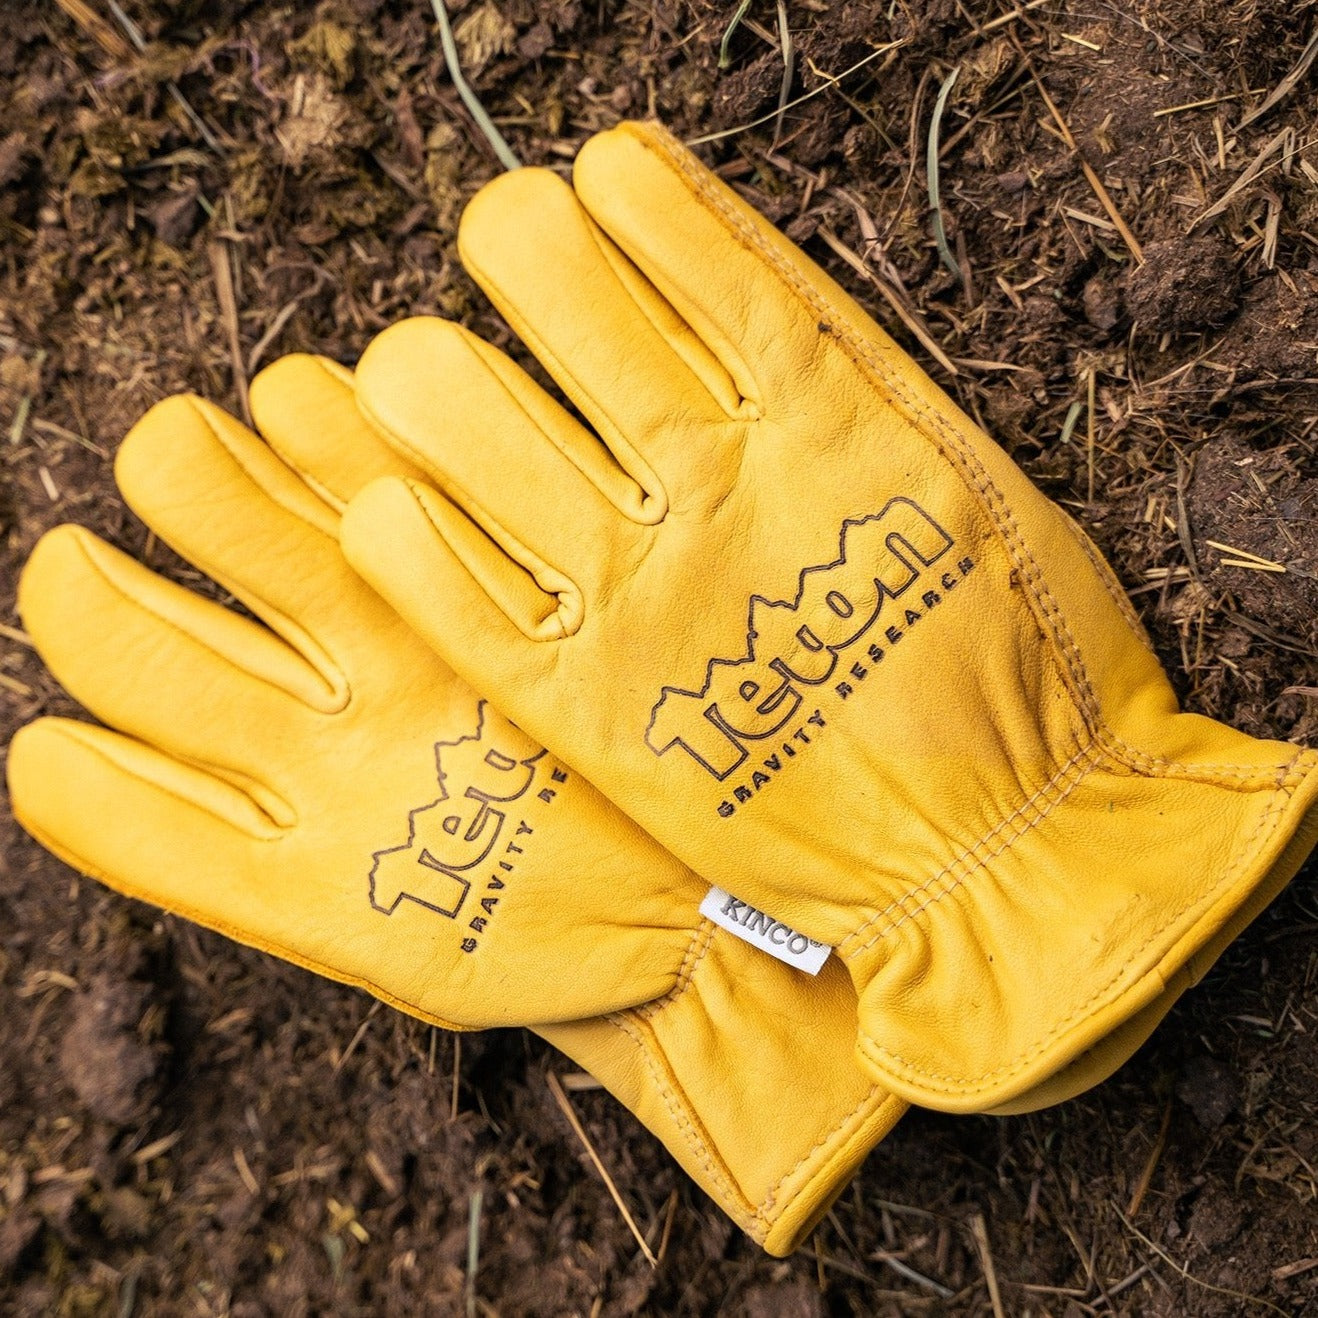 Teton Outdoors Fingerless Fishing Gloves and Neck Gaiter Set